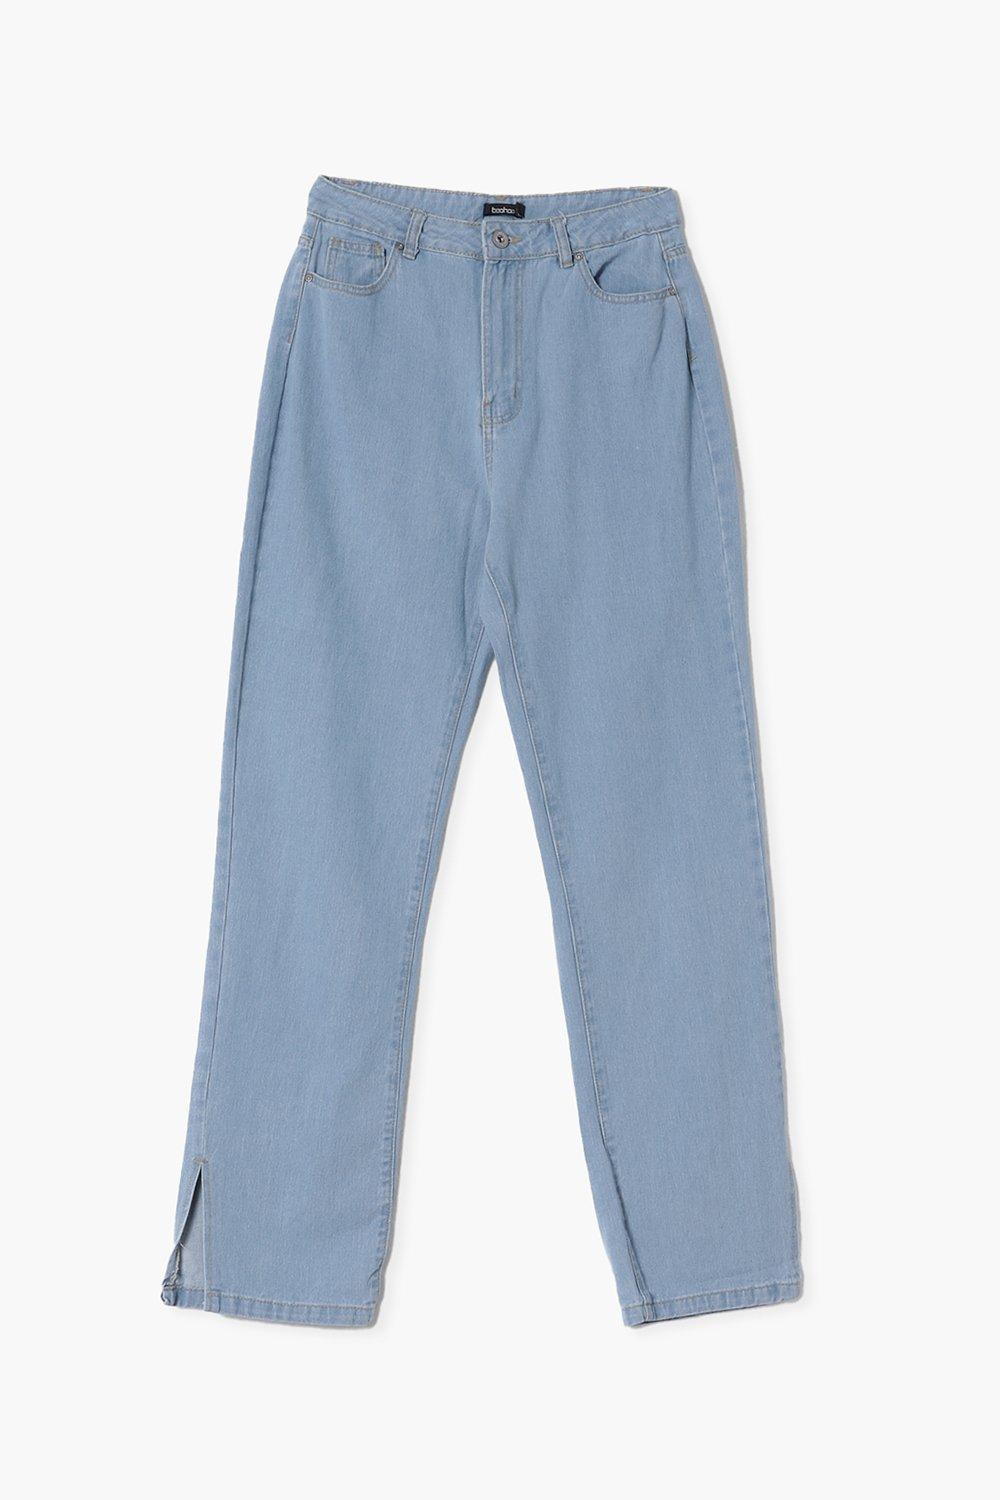 niebieskie spodnie jeans wysoki stan rozcięcie